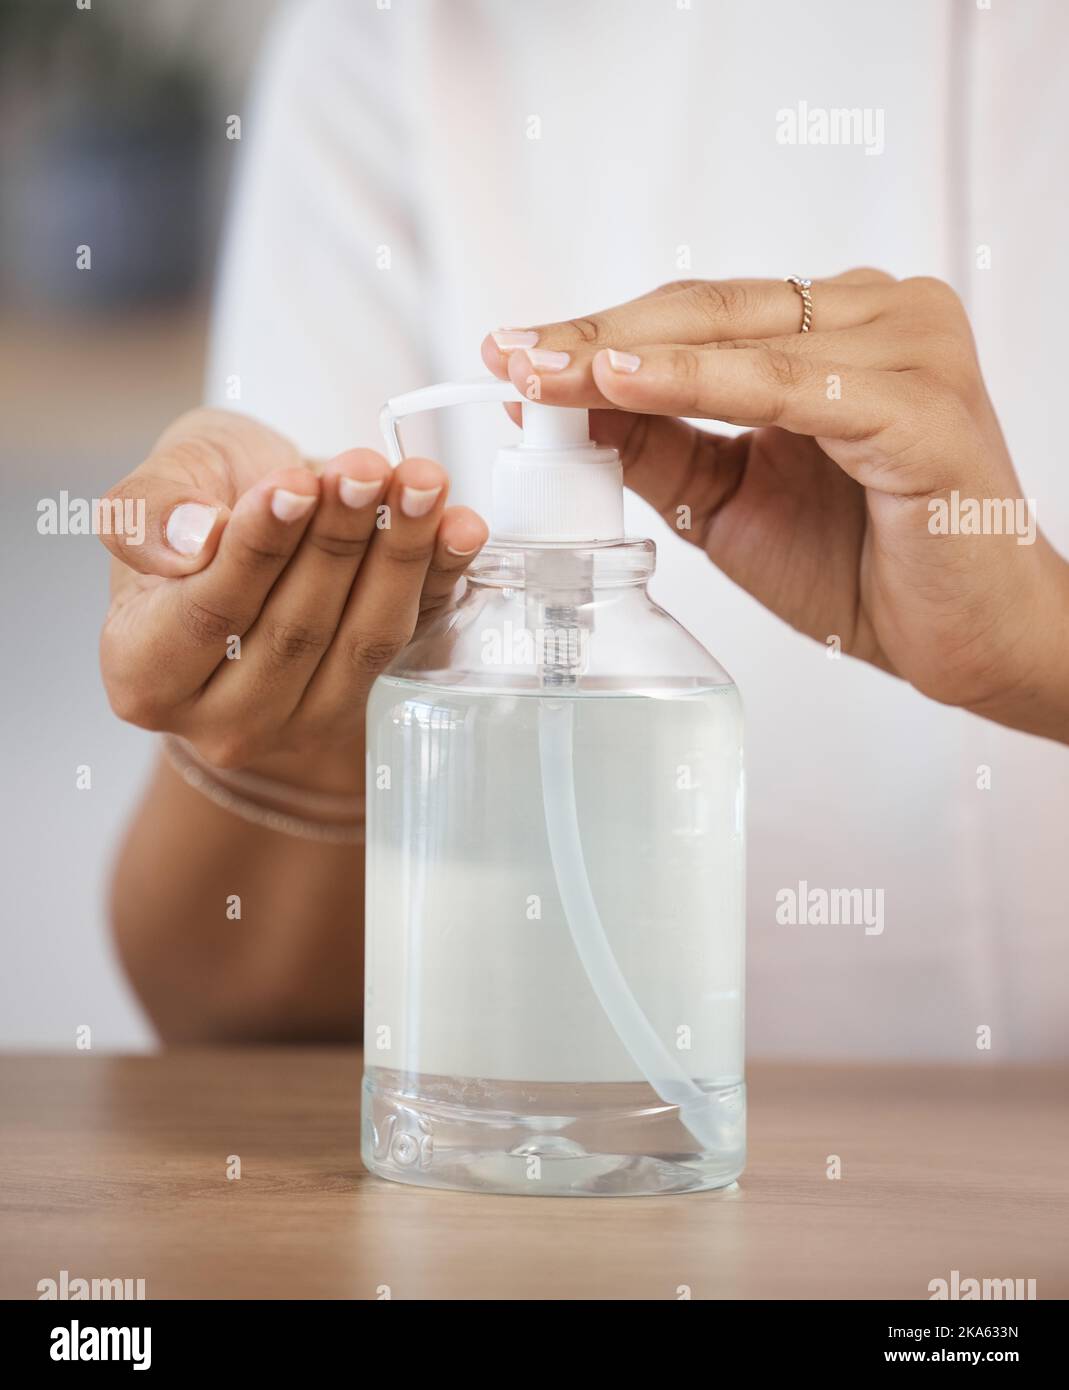 Soins de la peau, sécurité et nettoyage des mains bactéries avec du savon liquide pour une protection et une désinfection saines. Soins de santé, bien-être et femme se pressant la main Banque D'Images